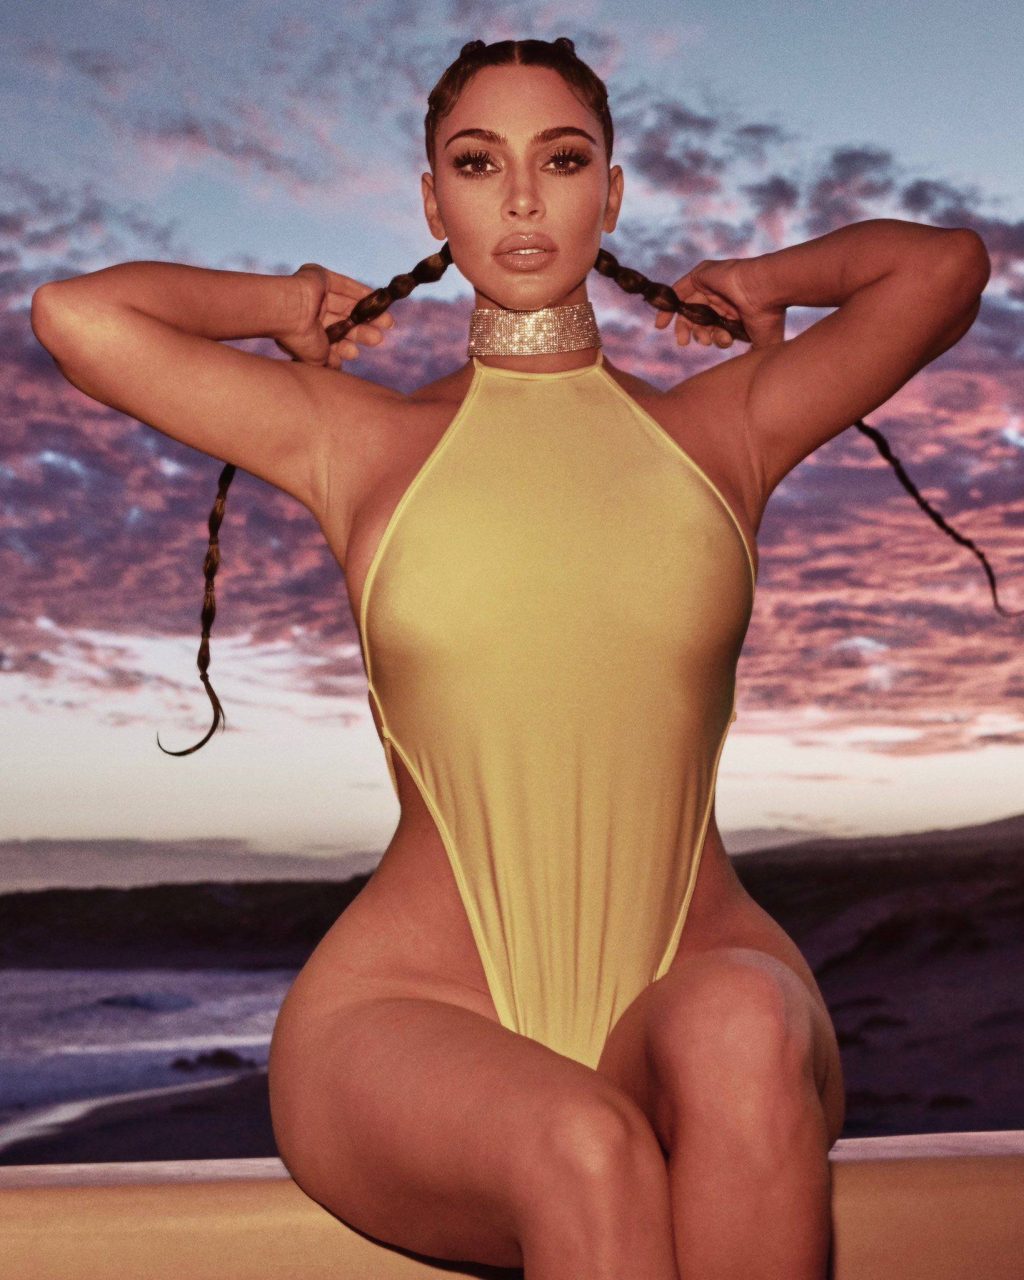 Kim Kardashian West Sexy (5 New Photos)